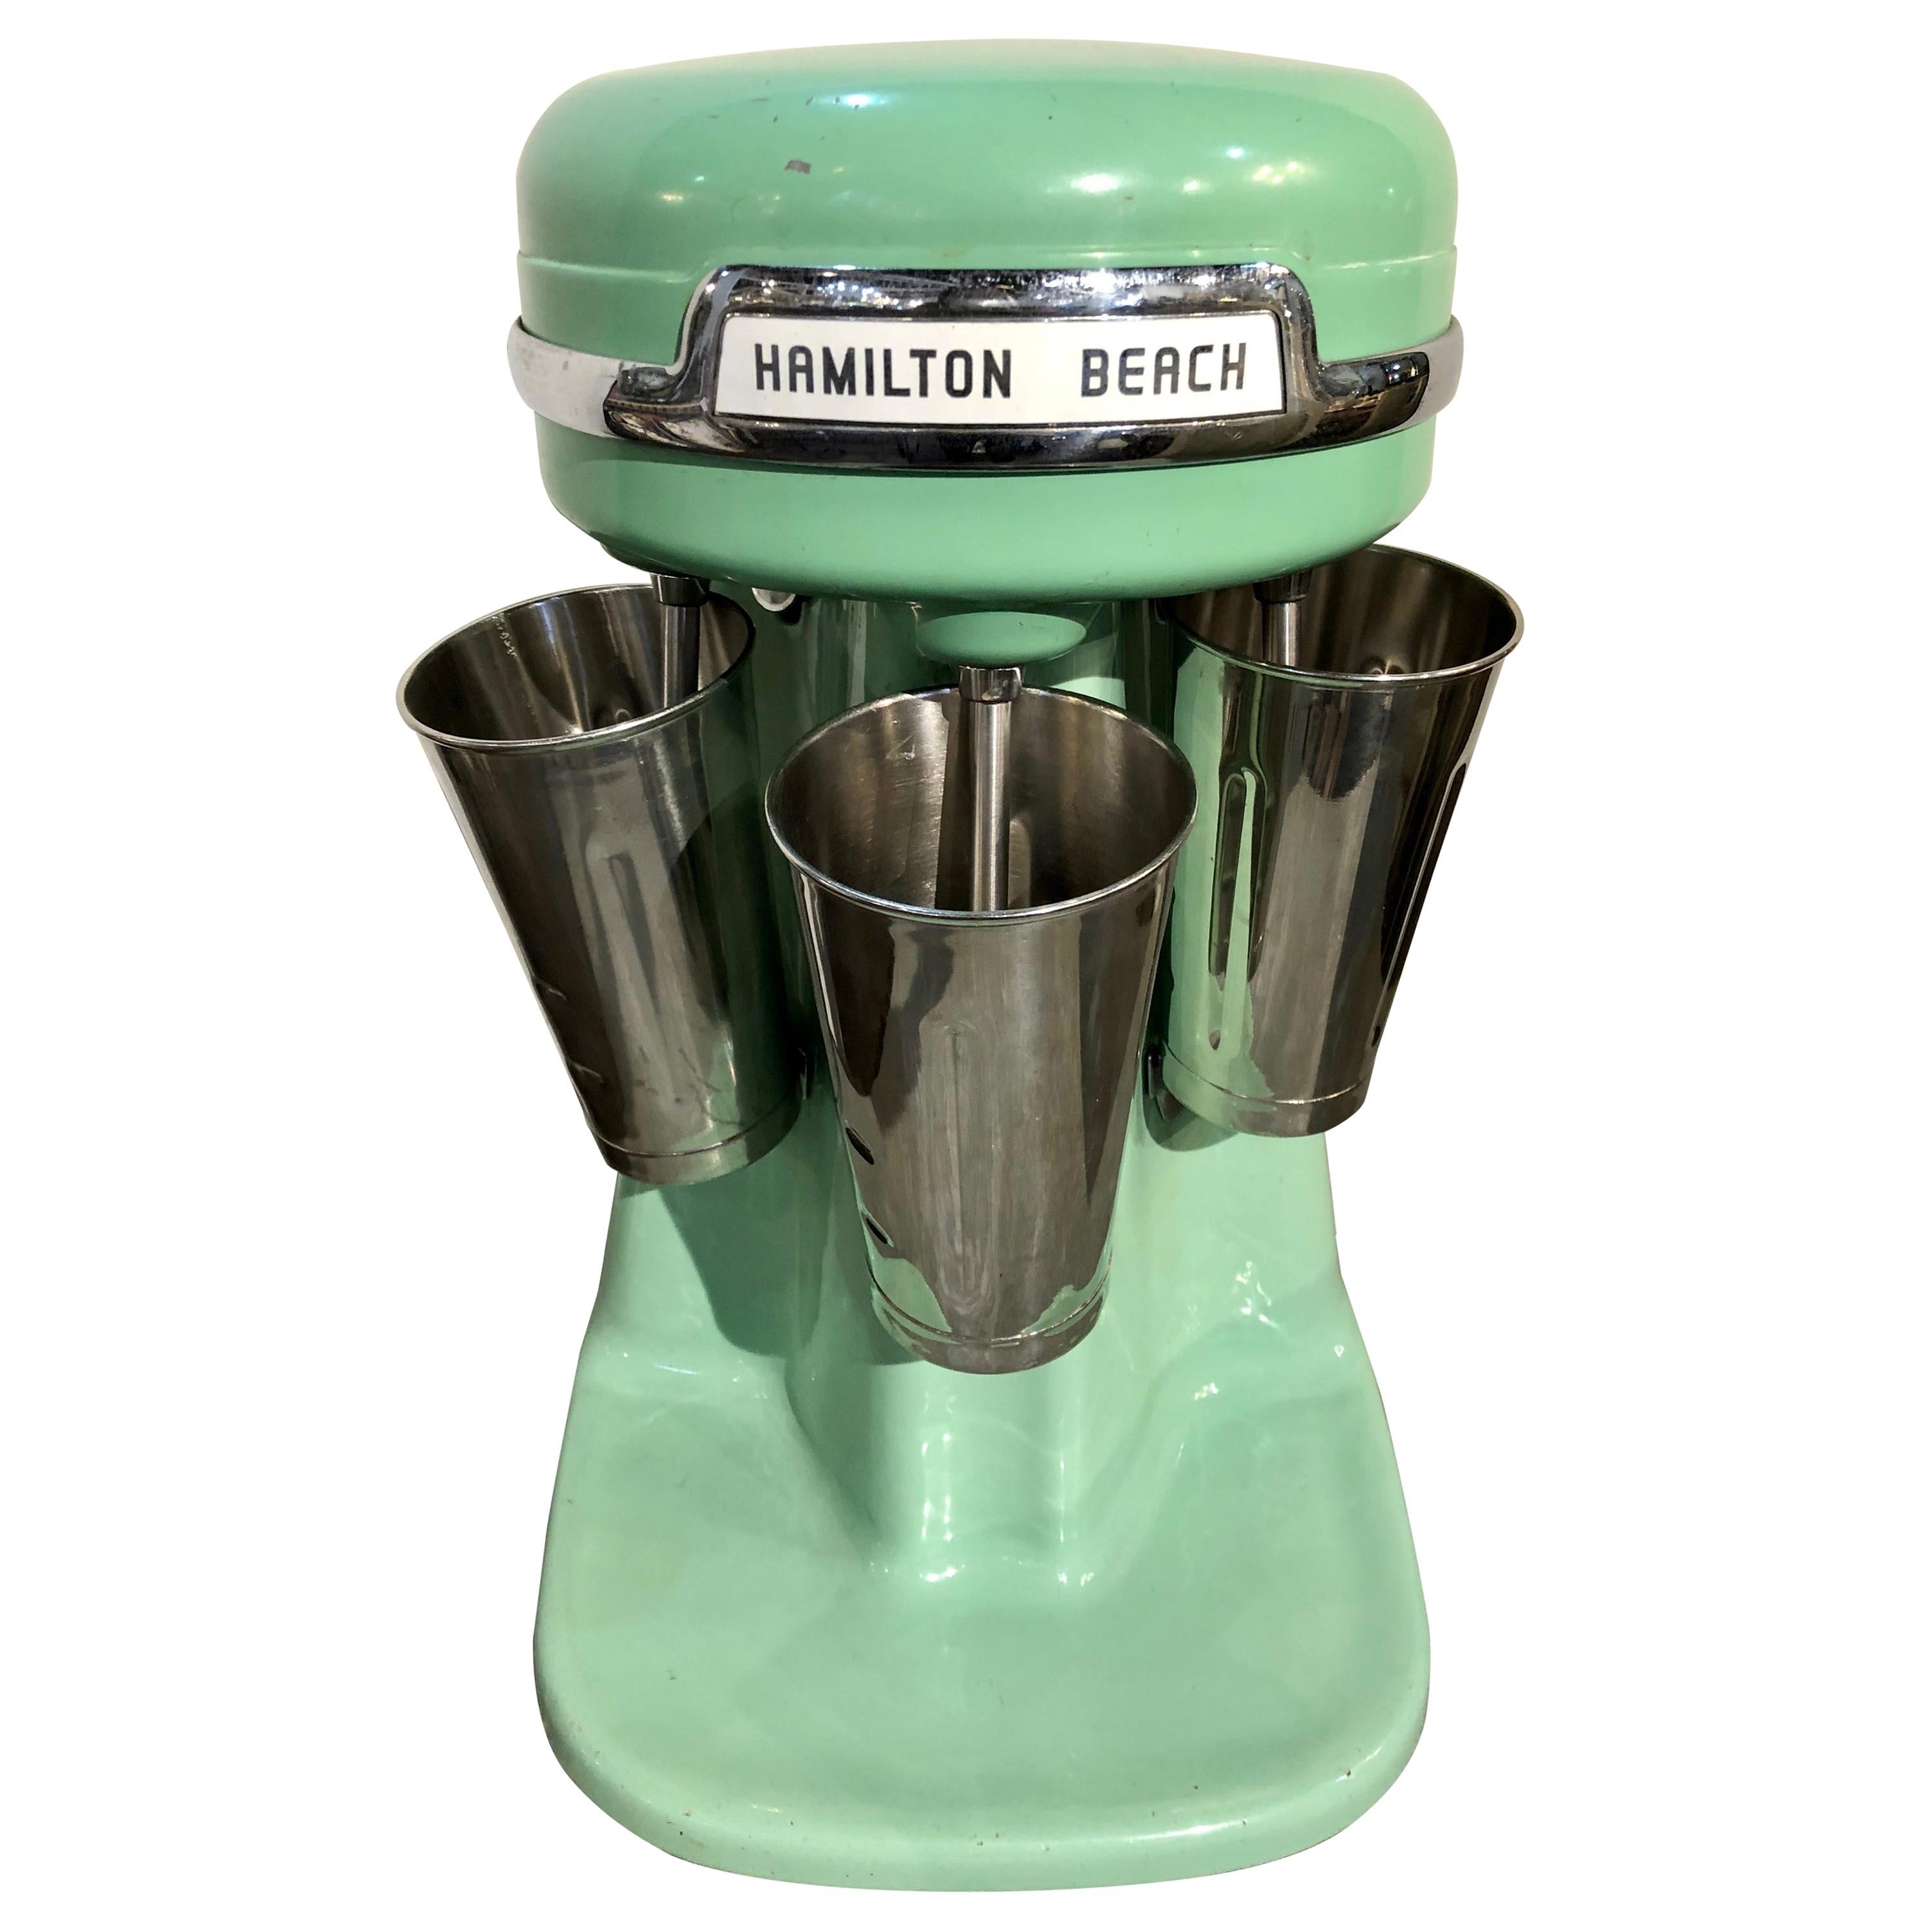 https://a.1stdibscdn.com/hamilton-beach-milkshake-maker-vintage-in-jadite-green-for-sale/1121189/f_189868821589014398939/18986882_master.jpg